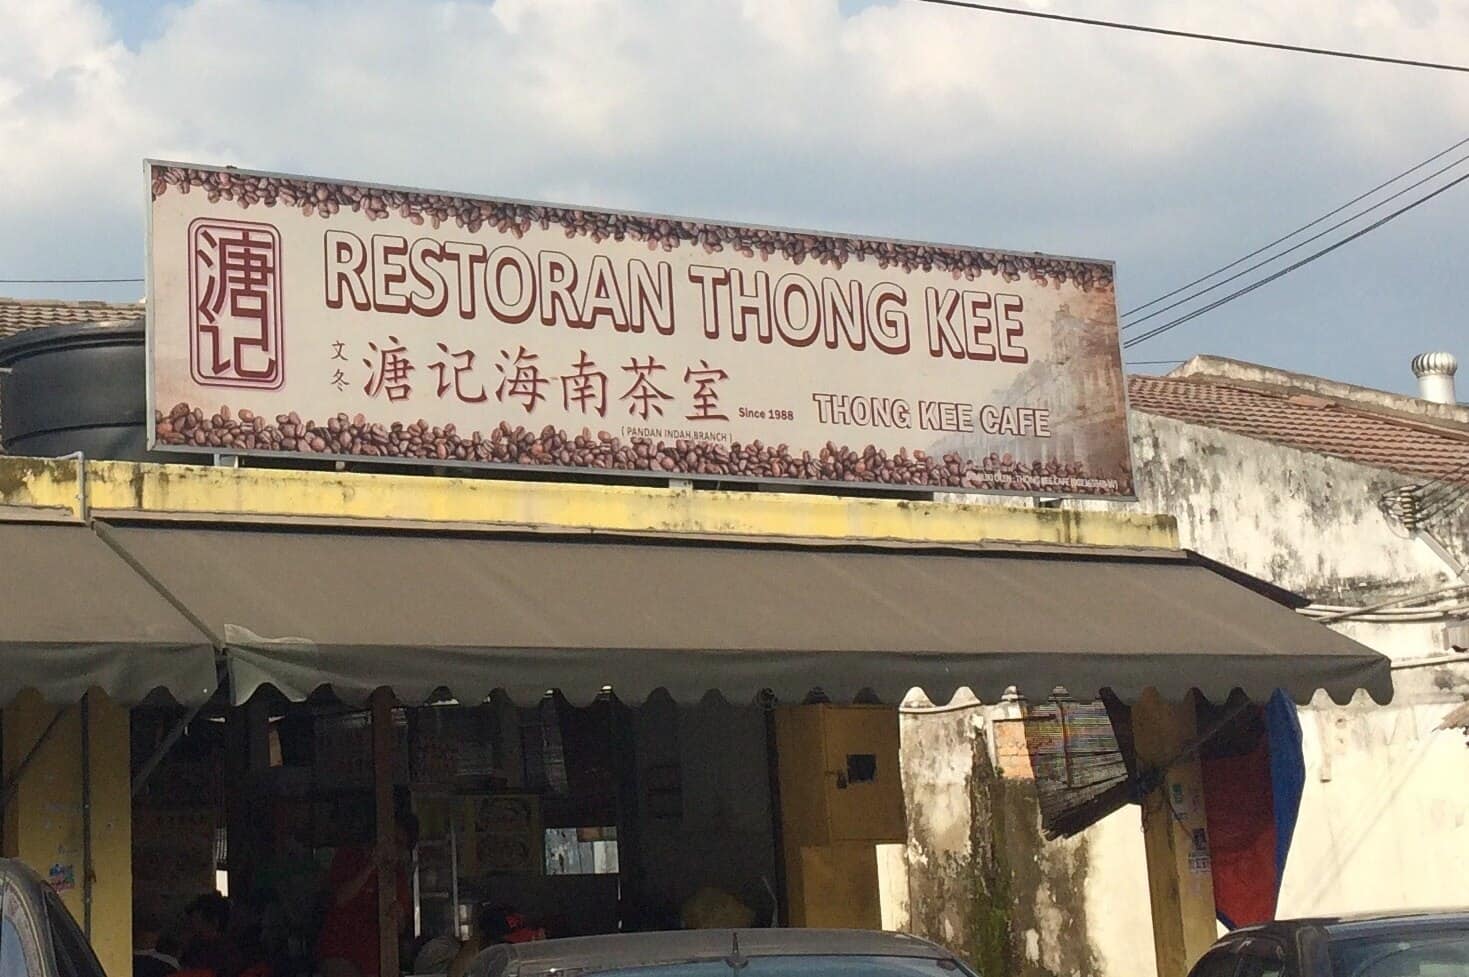 Thong kee